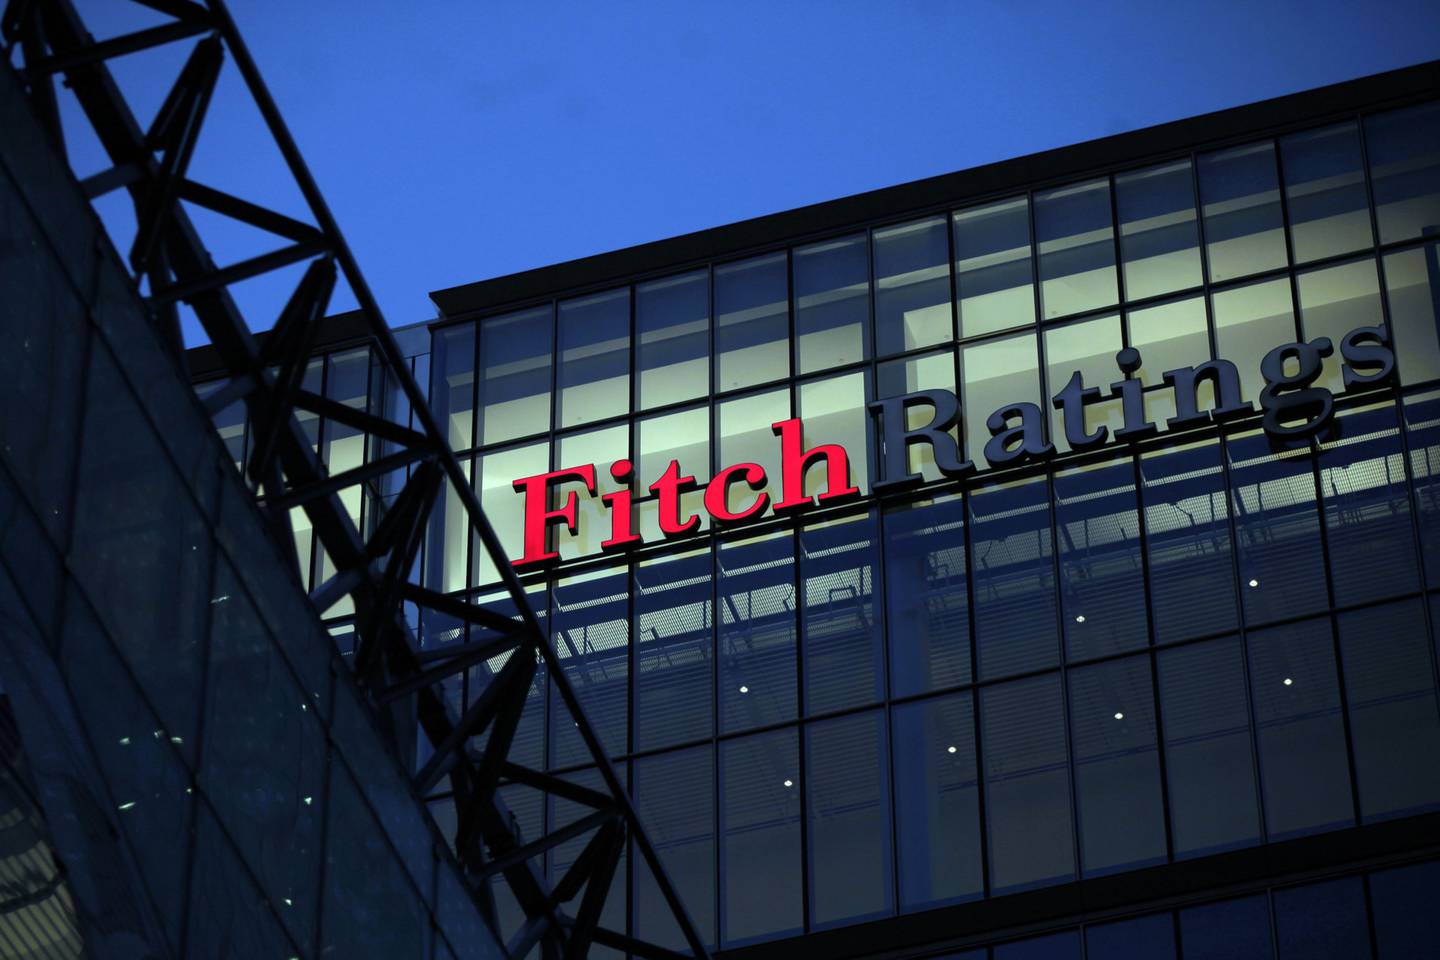 El letrero de la agencia financiera Fitch Ratings Ltd., ubicada dentro de 30 North Colonnade, se ve en un edificio en el distrito comercial y de negocios de Canary Wharf en Londres, Reino Unido, el jueves 1 de marzo de 2012.